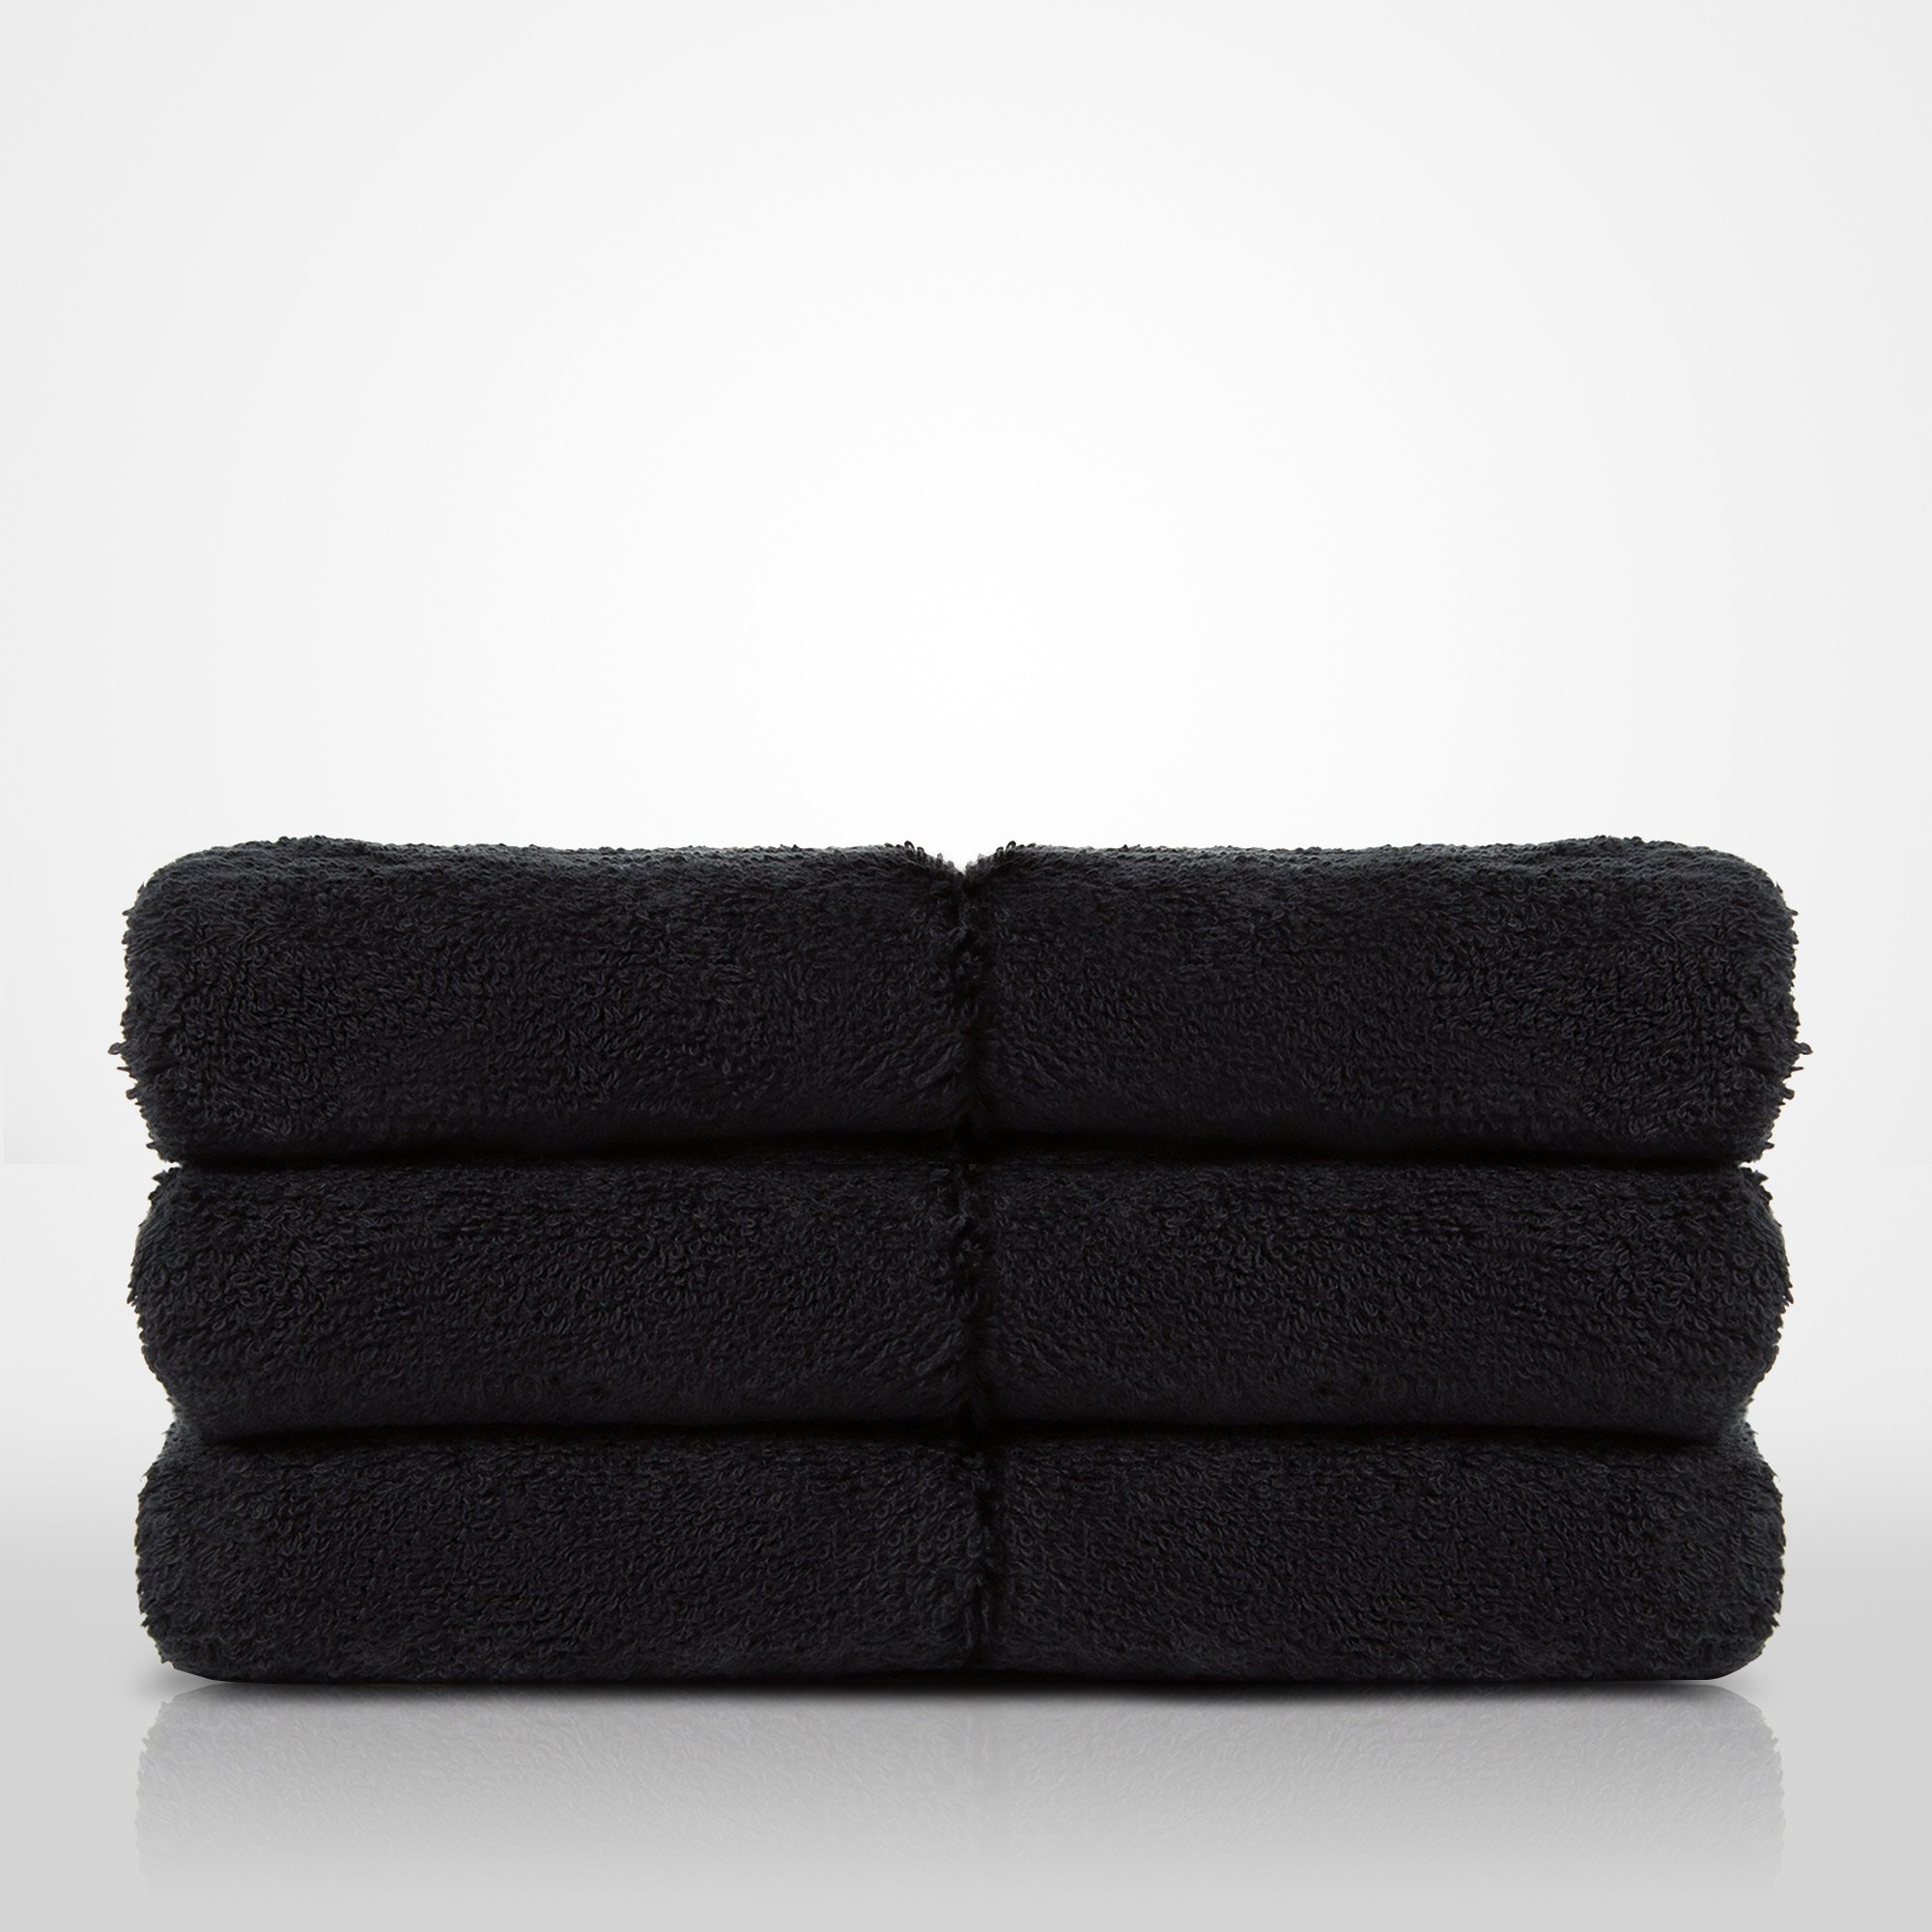 13" x 13" - 100% Turkish Cotton Black Terry Washcloth  - 12 Pack (Dozen)-Robemart.com